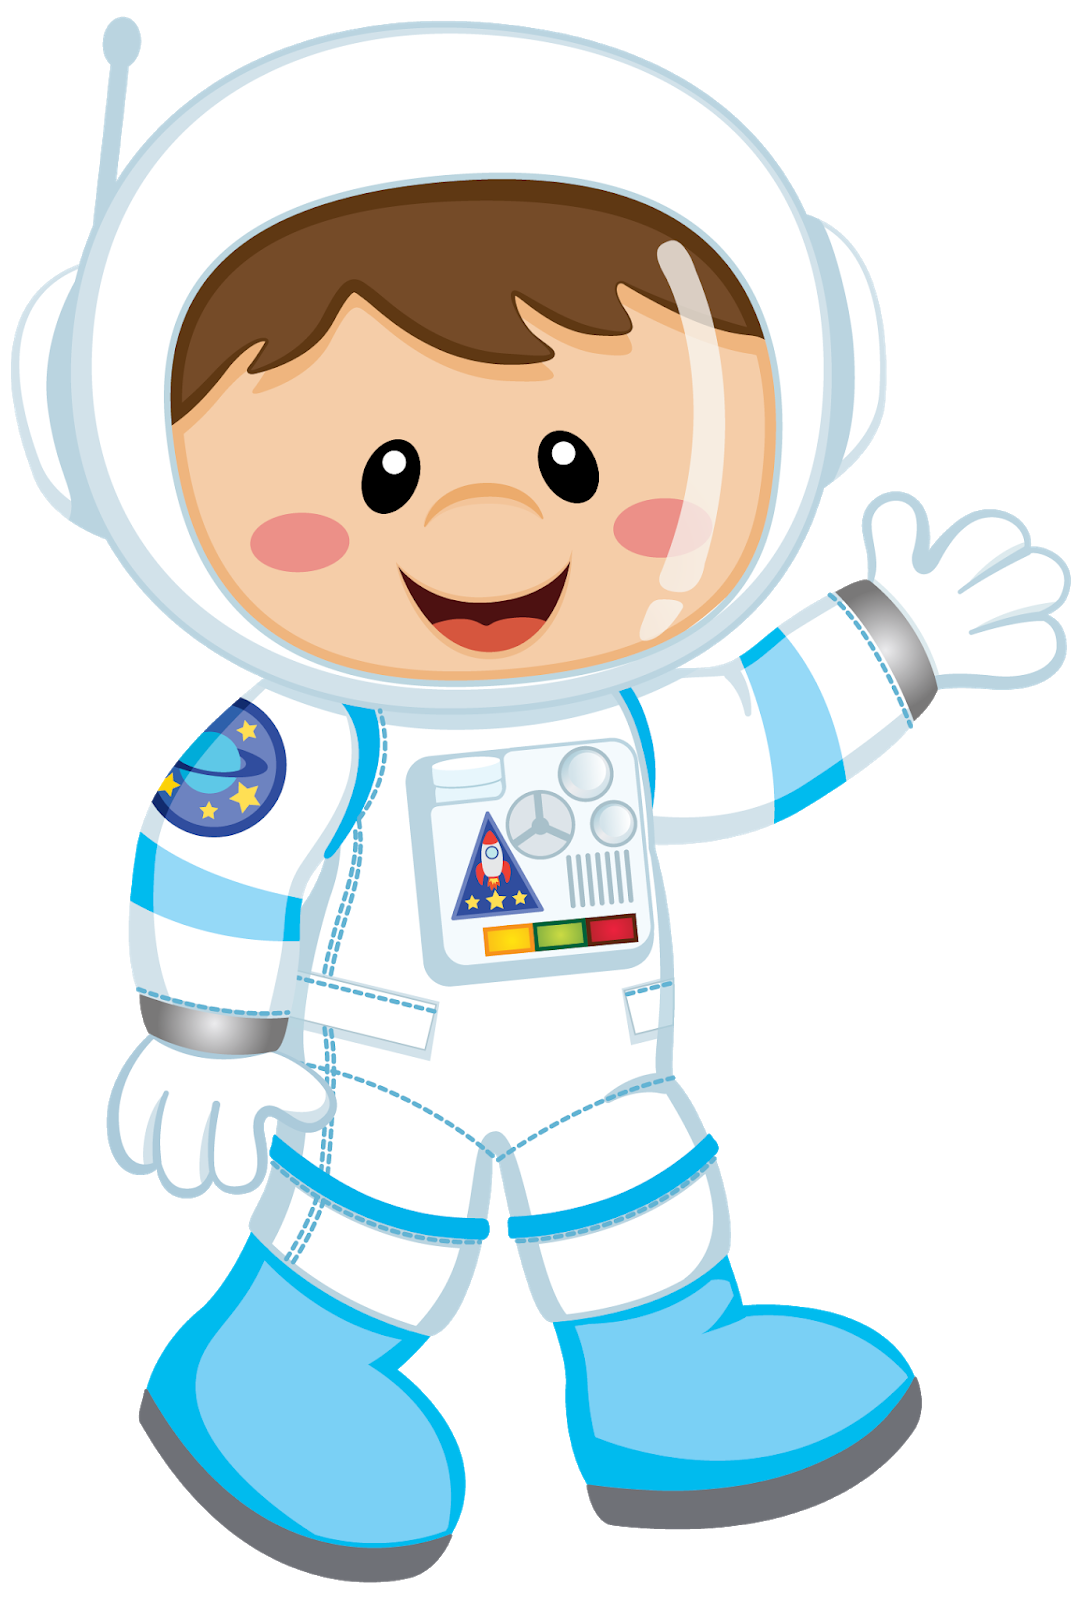 Космонавт цветной. Иллюстрация скафандра для детей. Космонавт для детей. Человечки в скафандрах. Космонавт мультяшный.